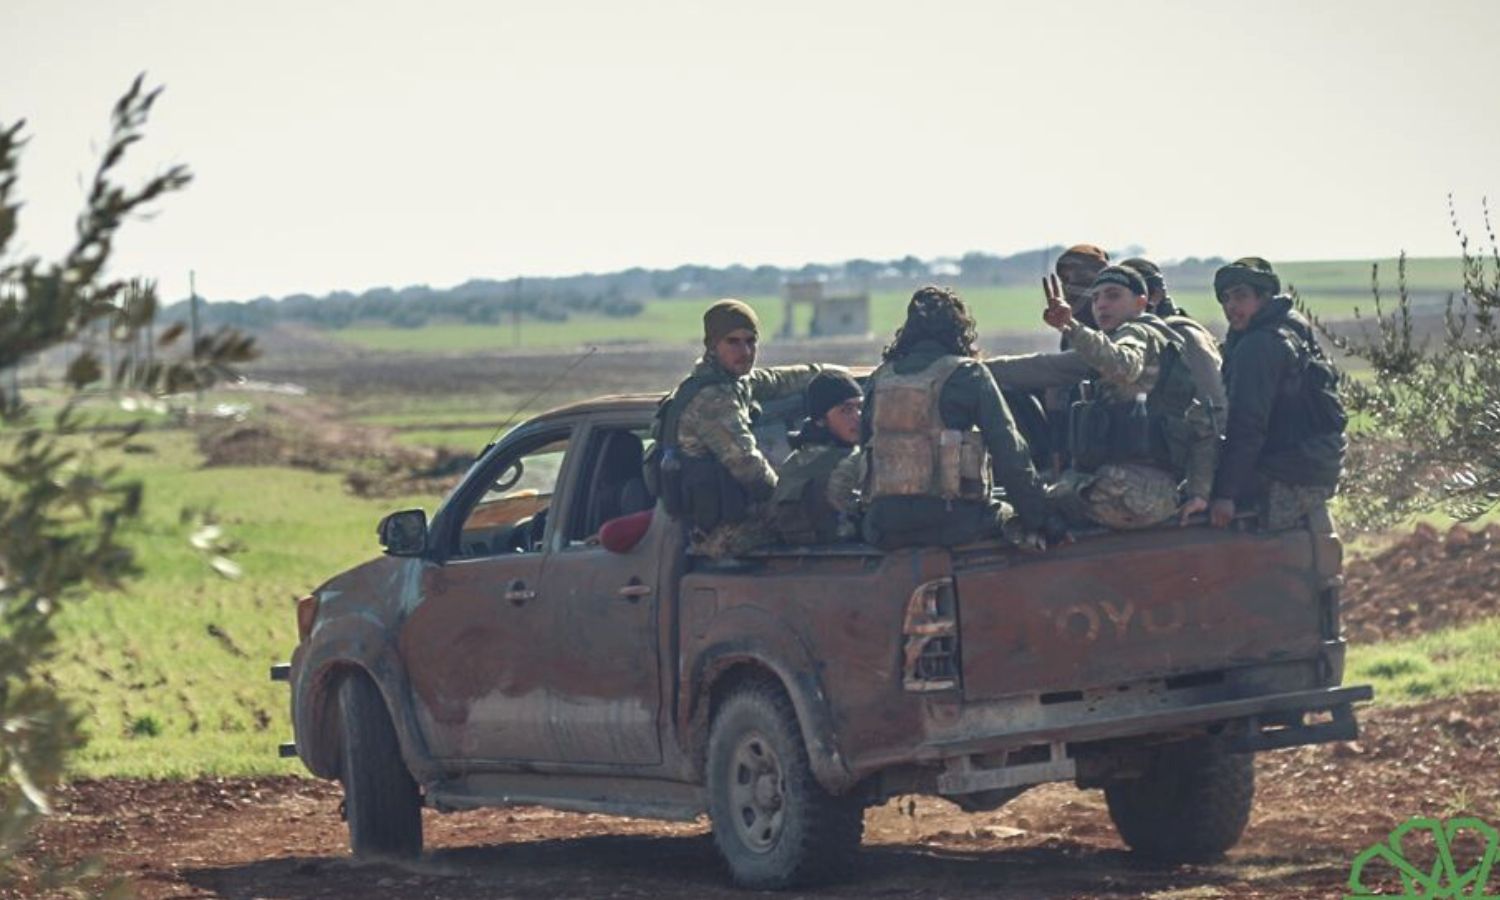 مقاتلون في حركة "أحرار الشام الإسلامية" قبيل انطلاقهم إلى خطوط التماس بري إدلب الشرقي الجنوبي- 7 من شباط 2018 (أحرار الشام/ تلجرام)